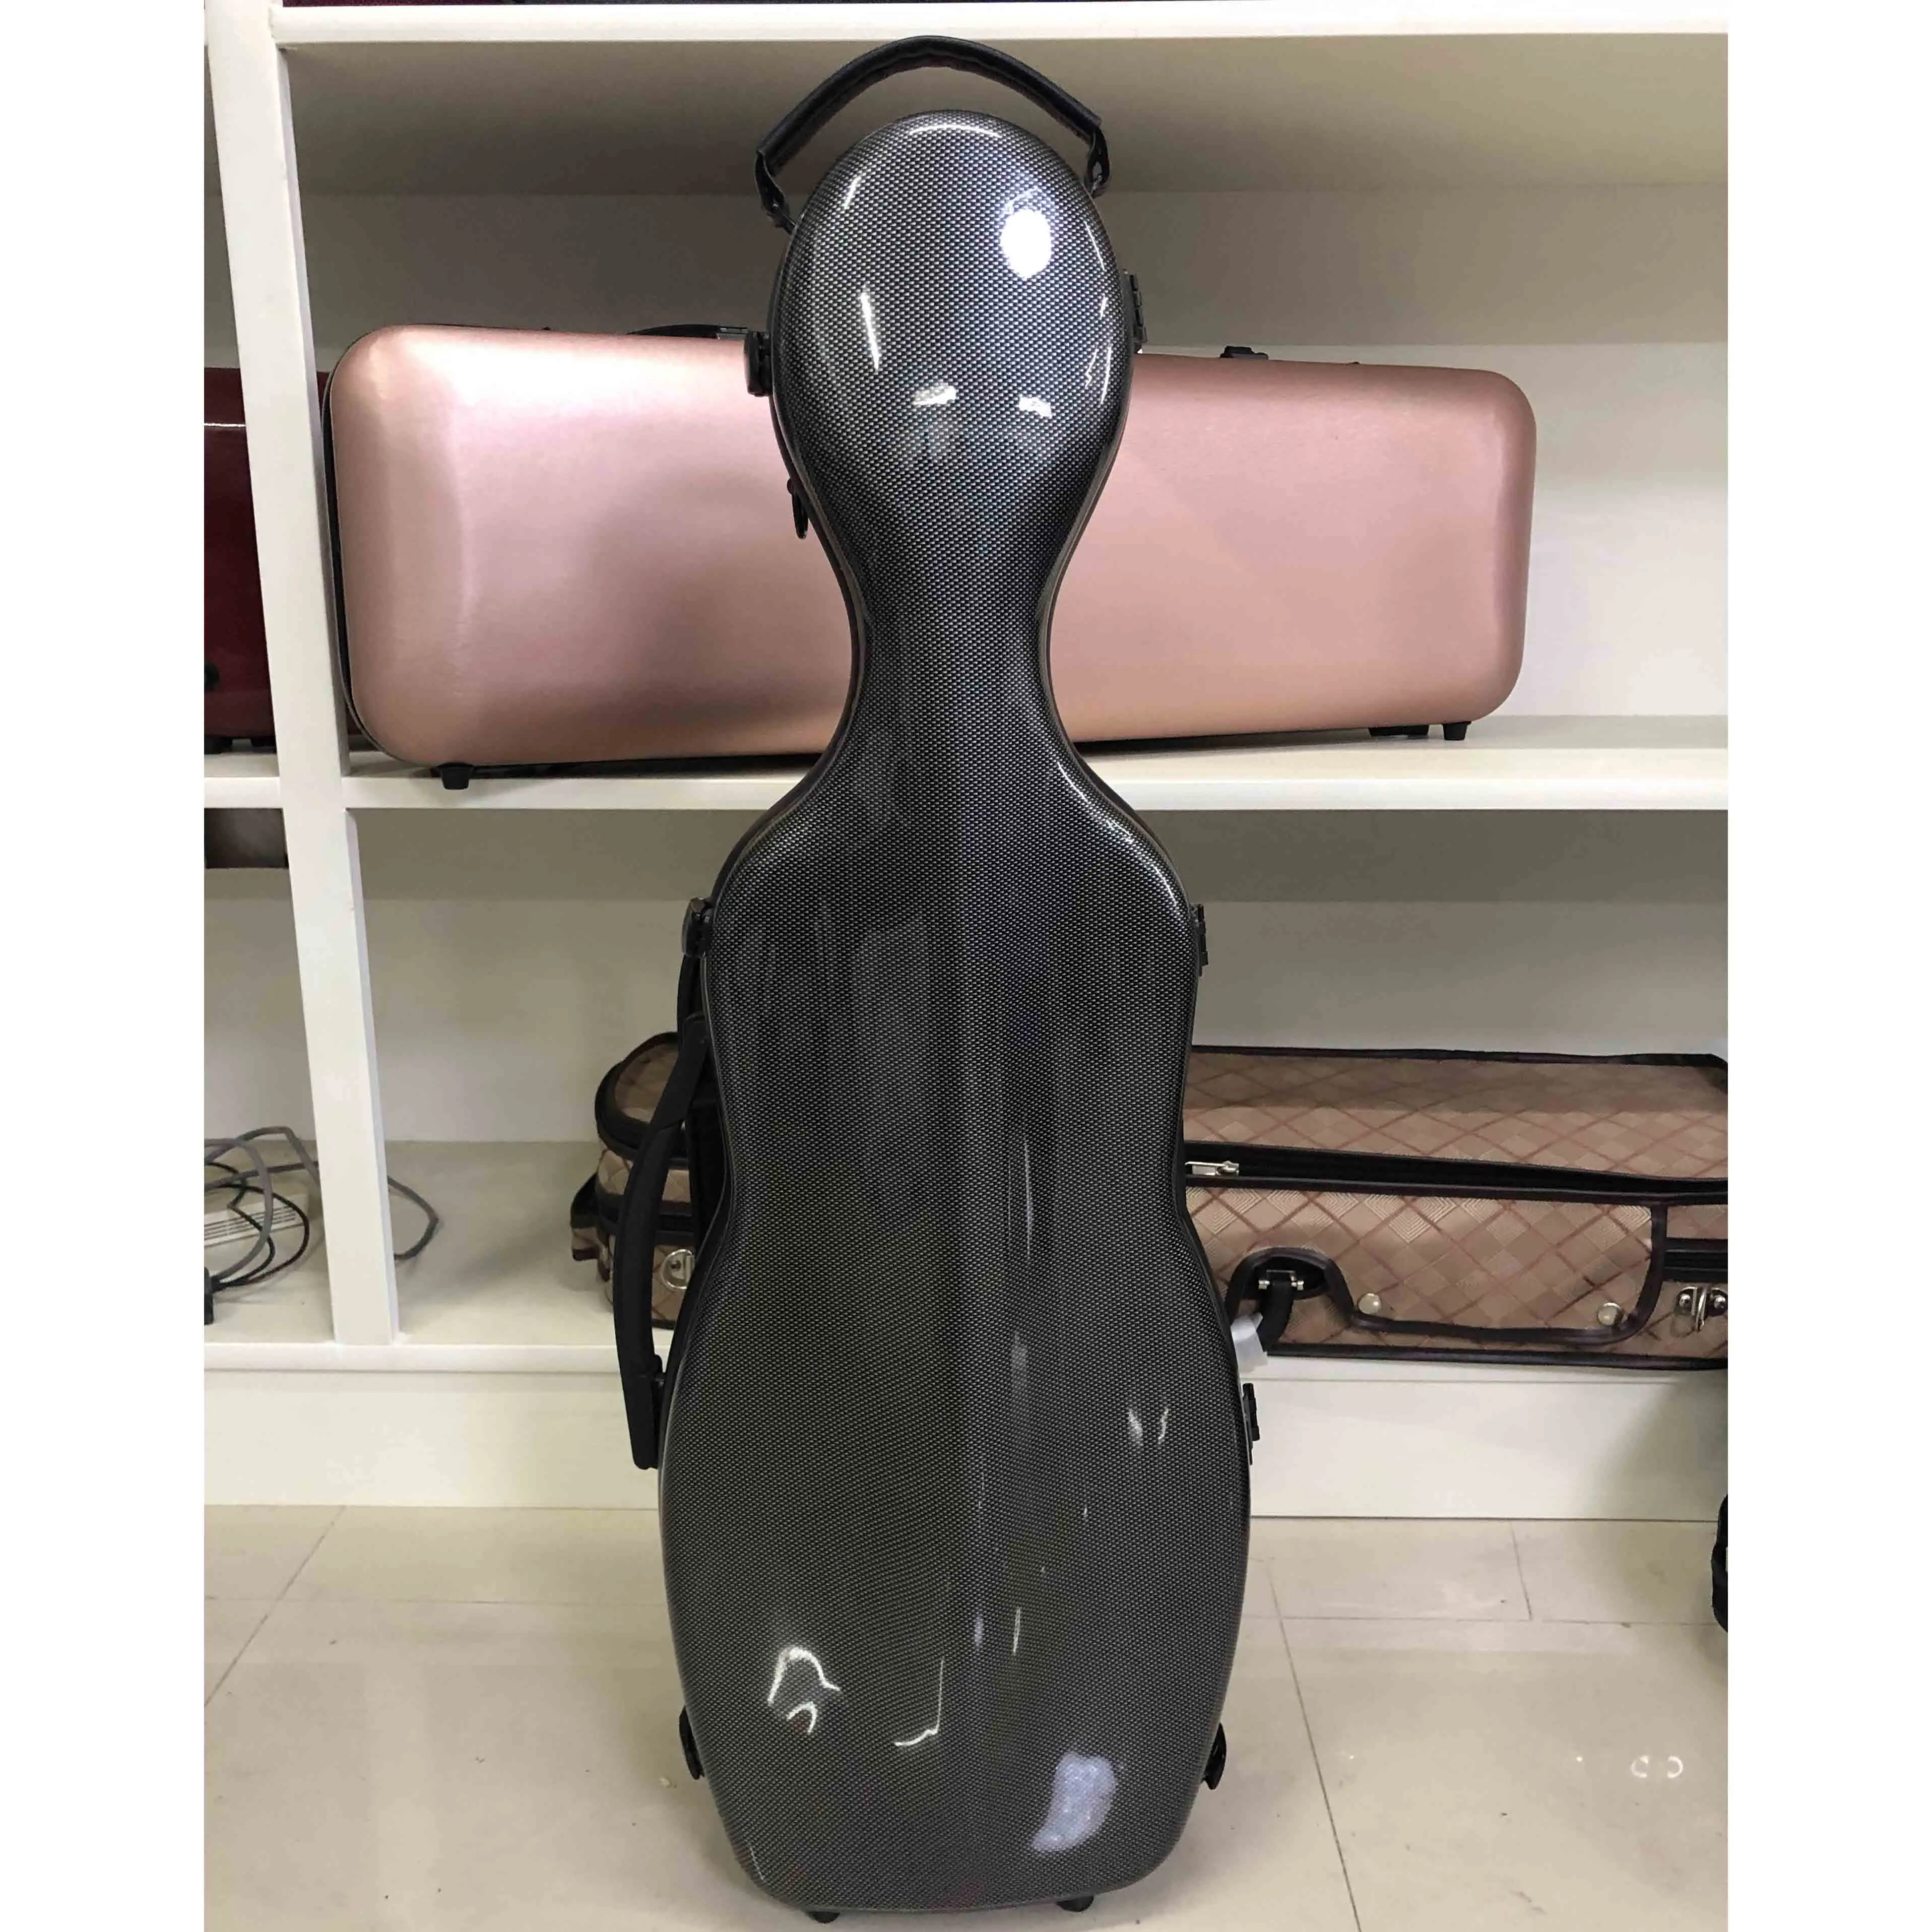 Lightweight backpack compressive drop and rainproof hygrometer 4/4 Carbon fiber Violin Case enlarge